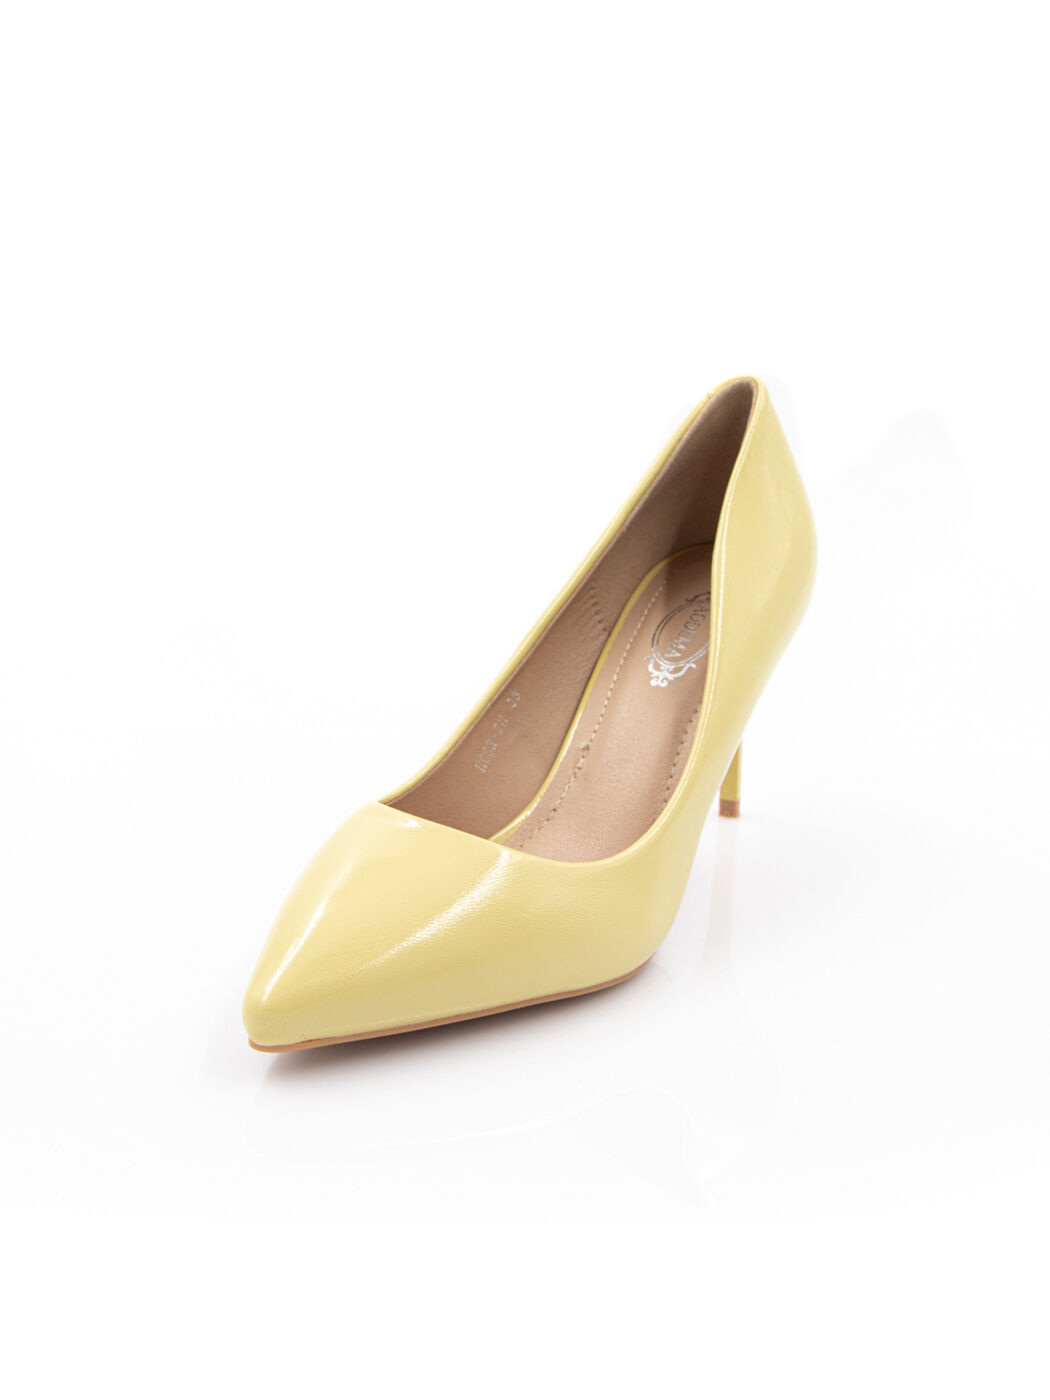 Туфли женские желтые искусственный лак каблук шпилька демисезон от производителя HM вид 0